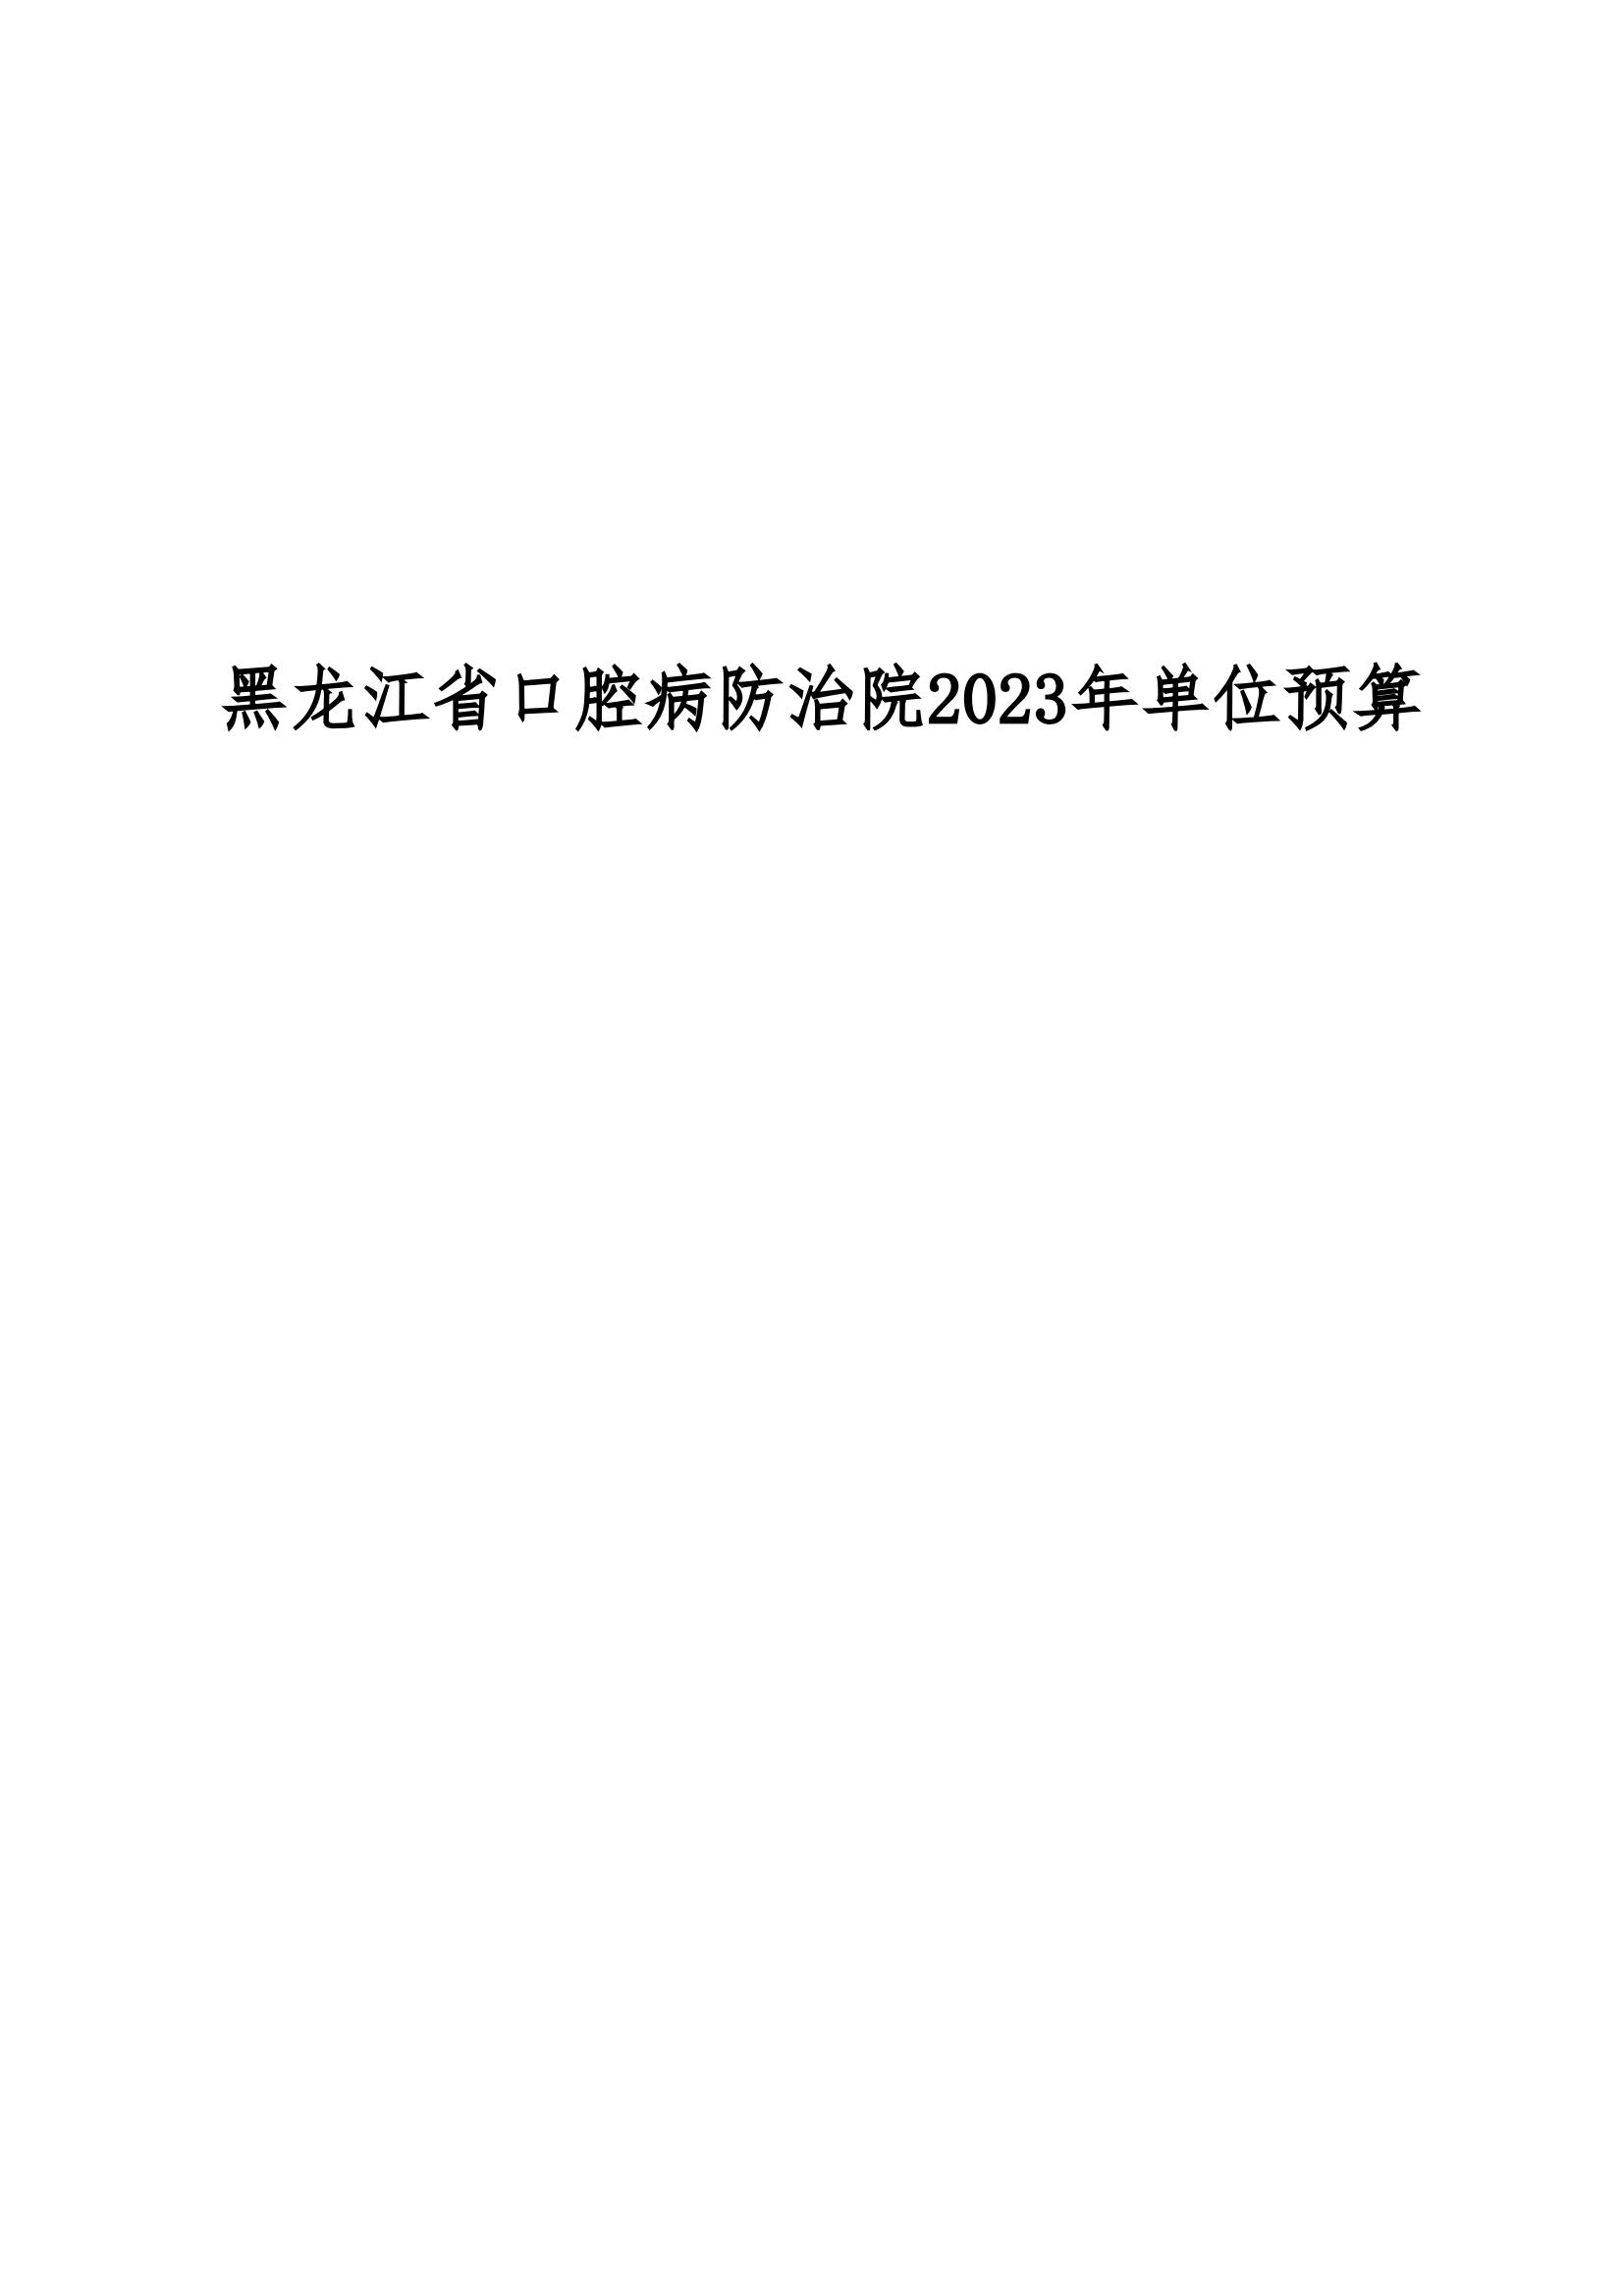 2023年黑龙江省口腔病防治院部门预算_00.png